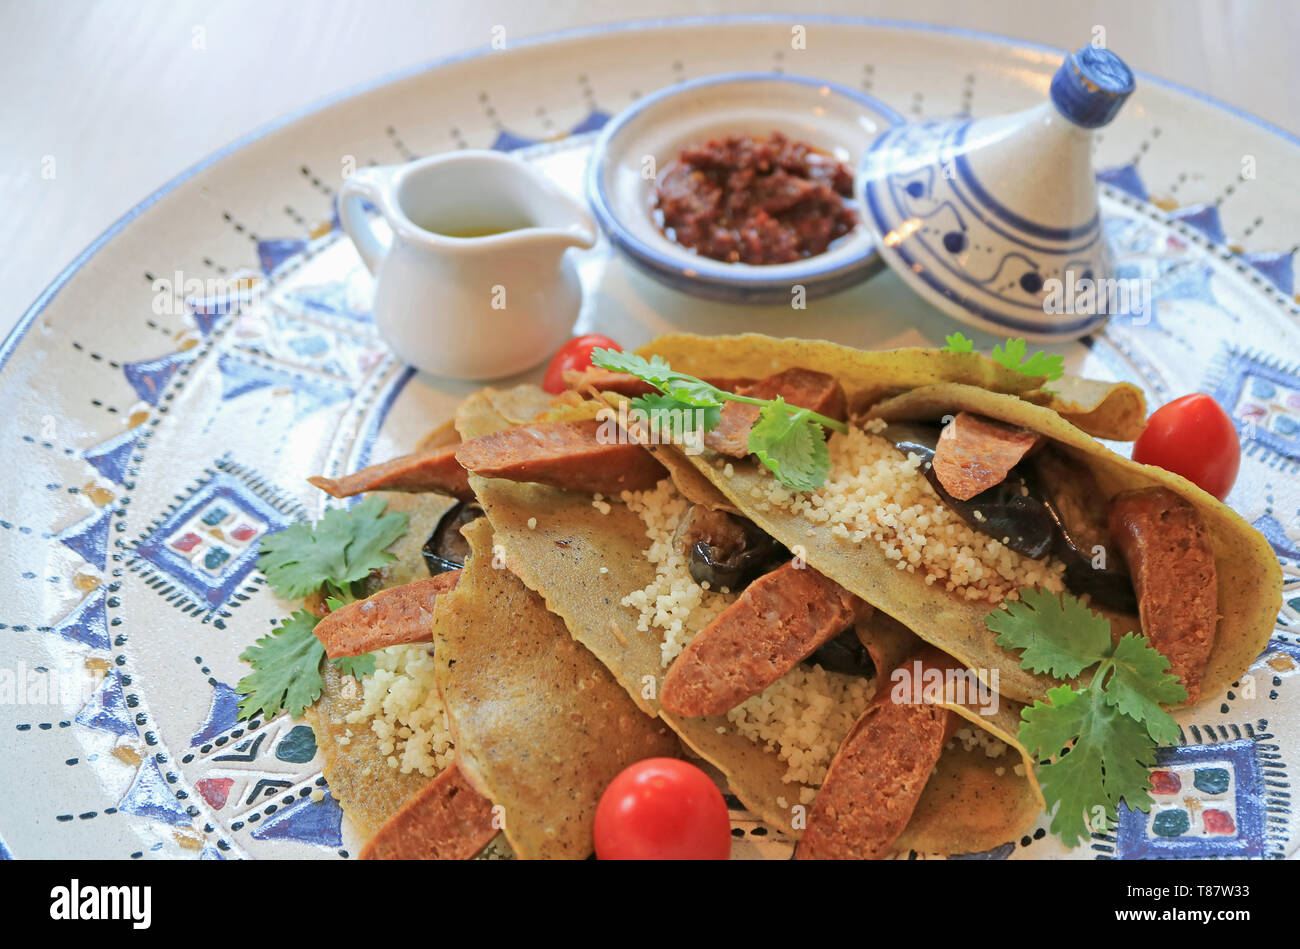 Stile marocchino crepes di grano saraceno con couscous marocchino, salsiccia e verdura Foto Stock